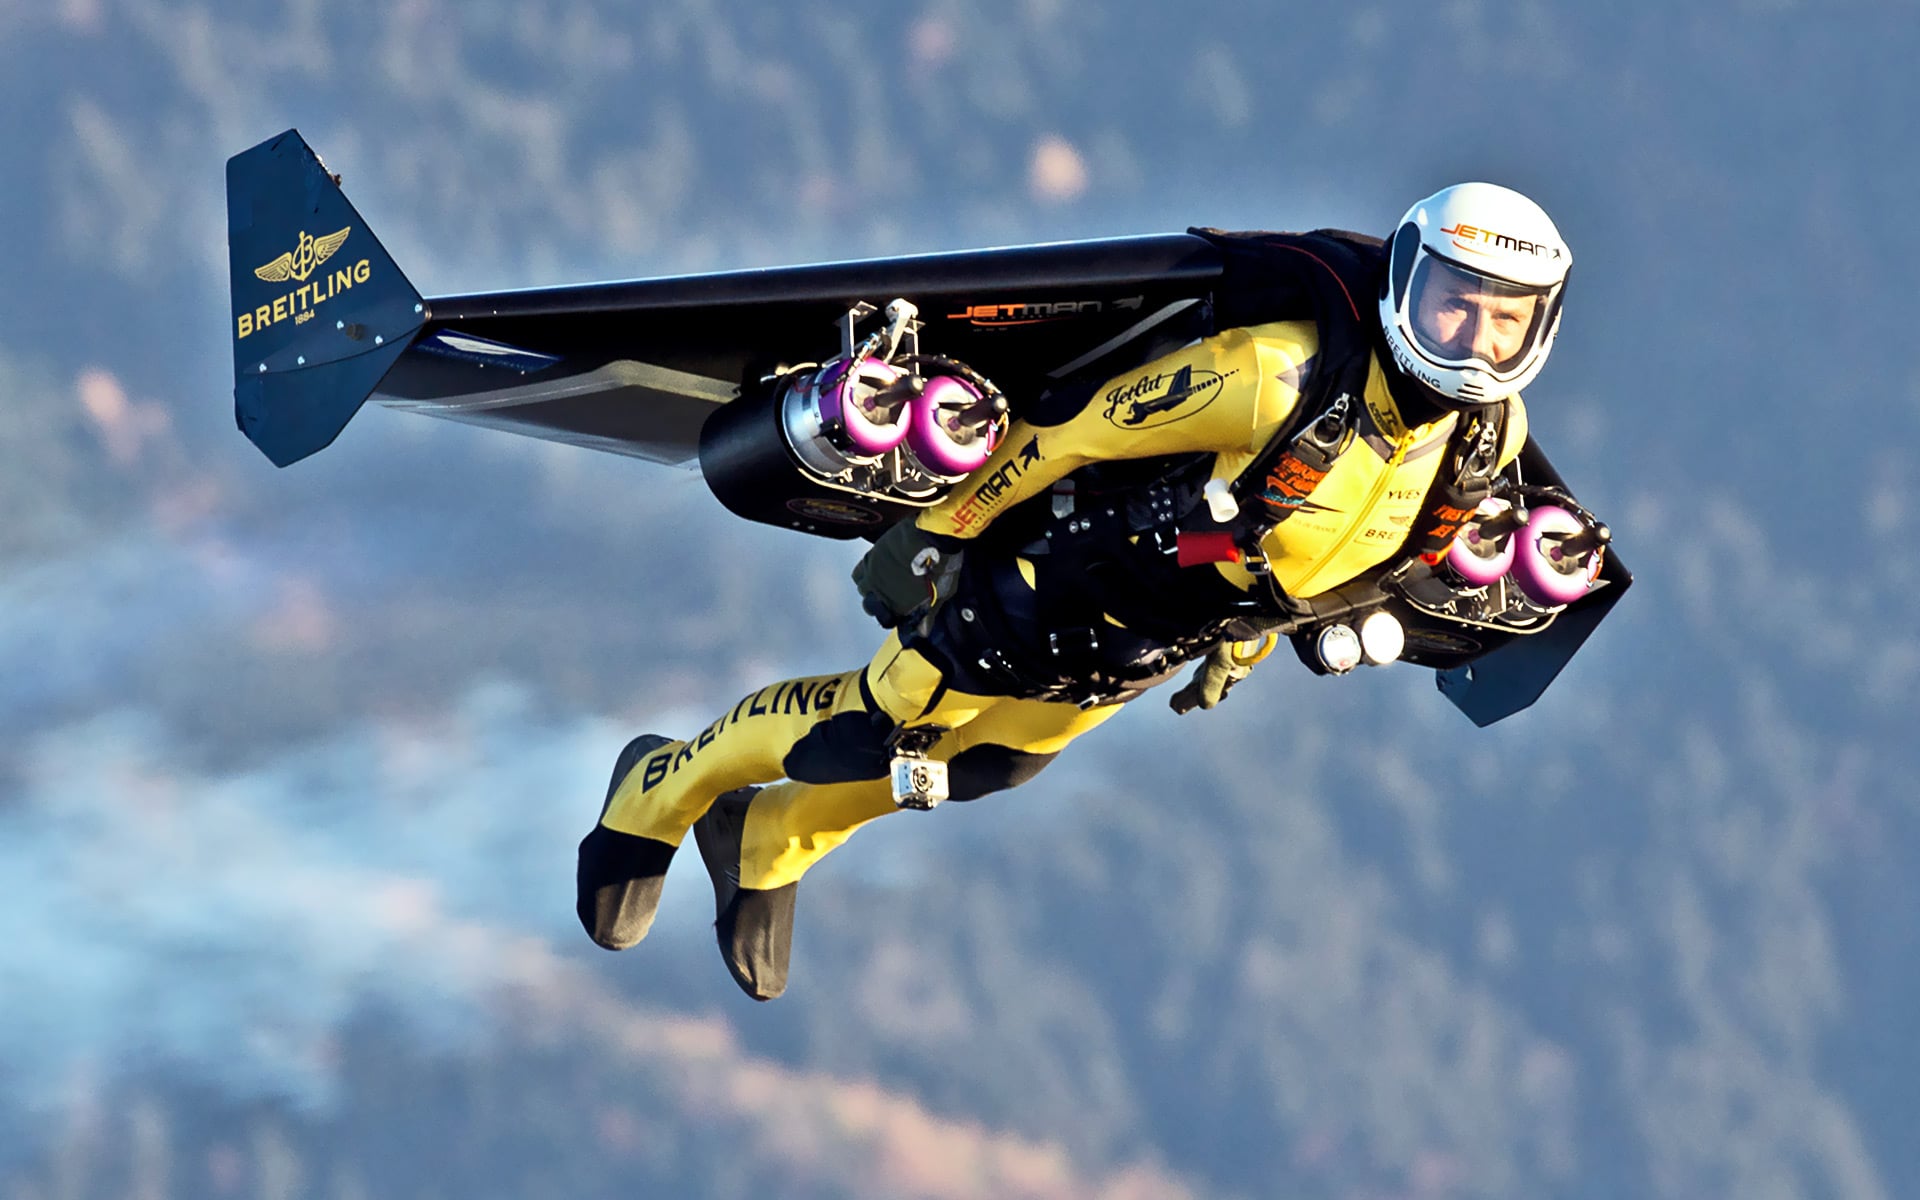 Полет человека видео. Реактивный ранец Jetman. Ив Росси реактивный ранец. Реактивный вингсьют. Пилот Jetman Dubai.